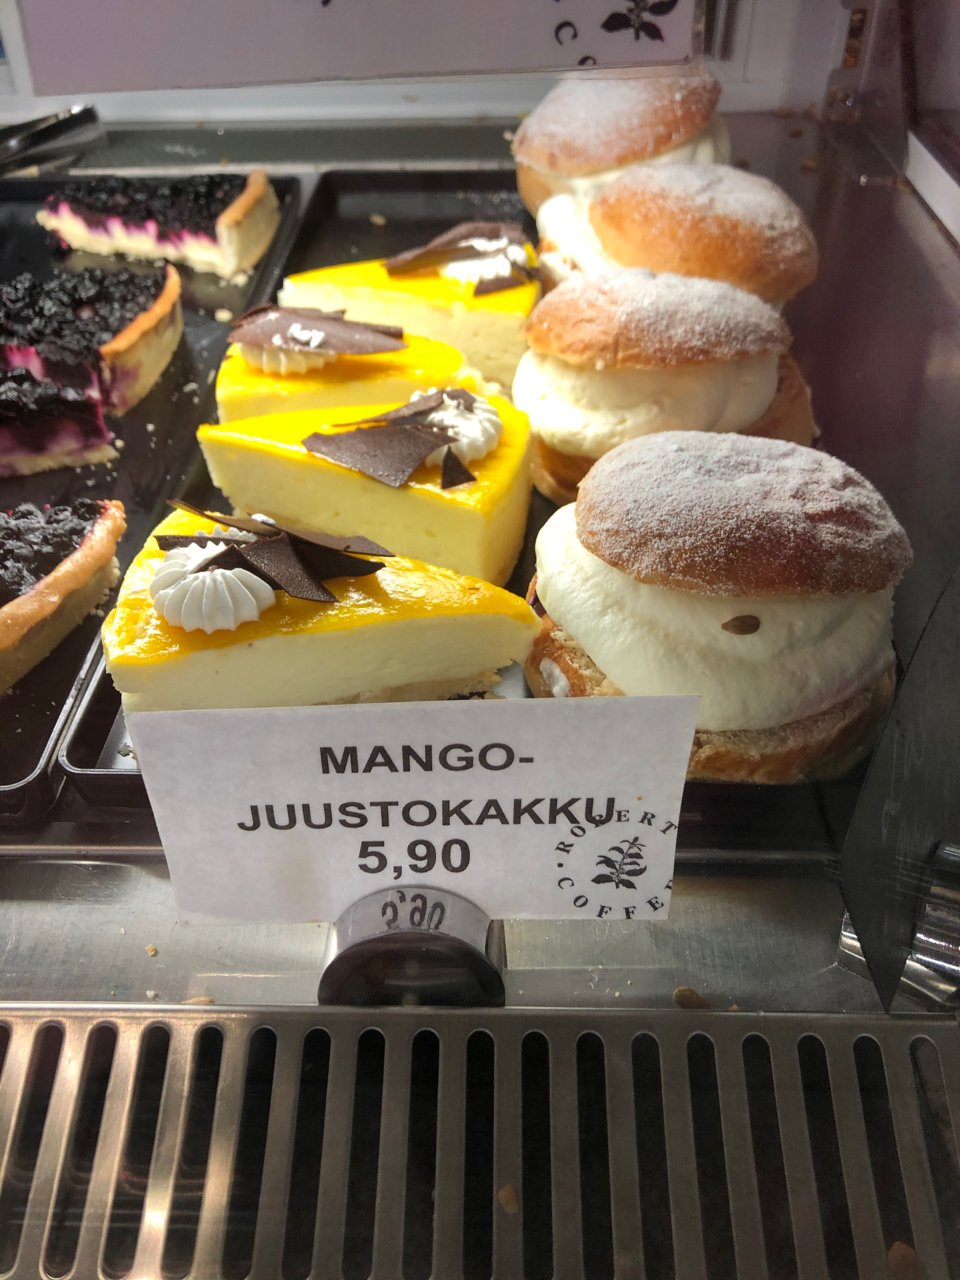 Mango-juustokakku